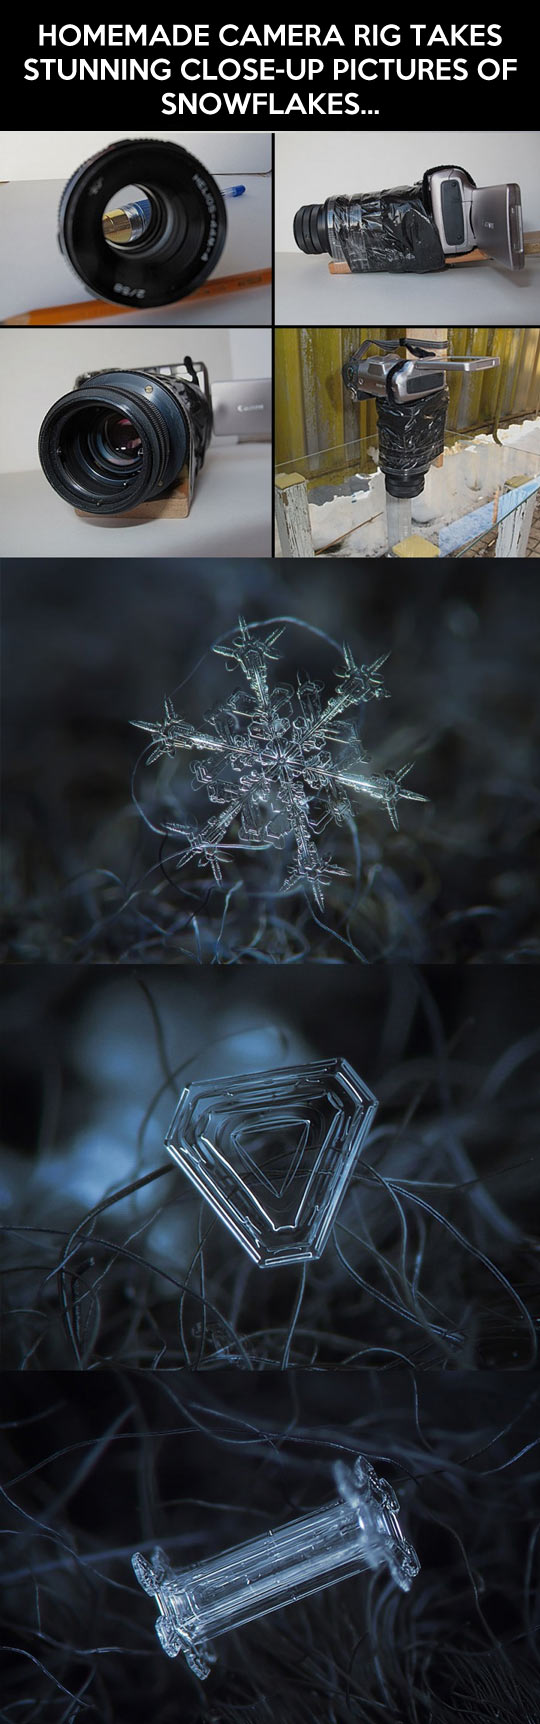 DIY close-up snowflake shots.